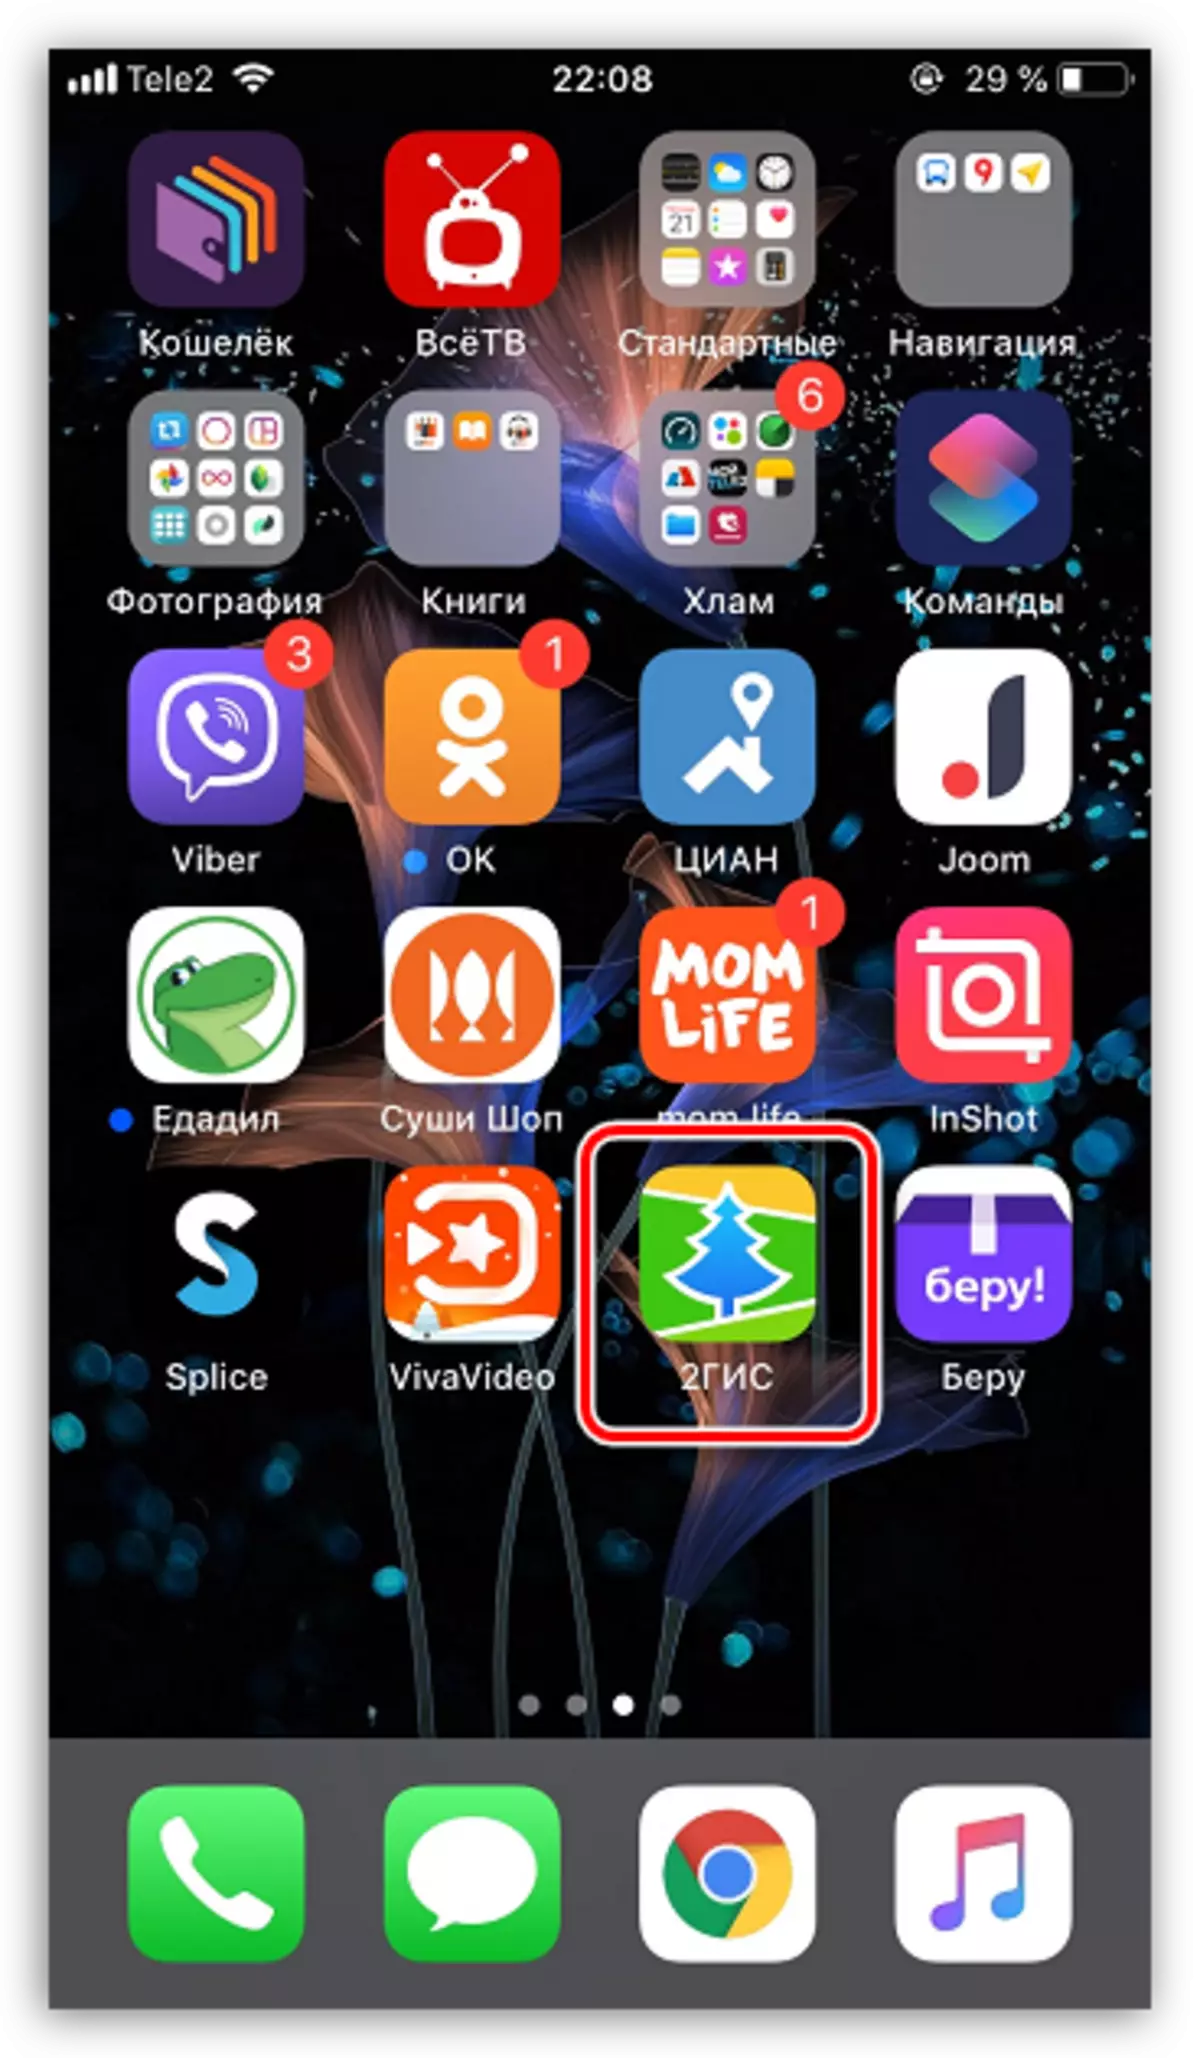 Gi-download nga app gikan sa App Store sa iPhone